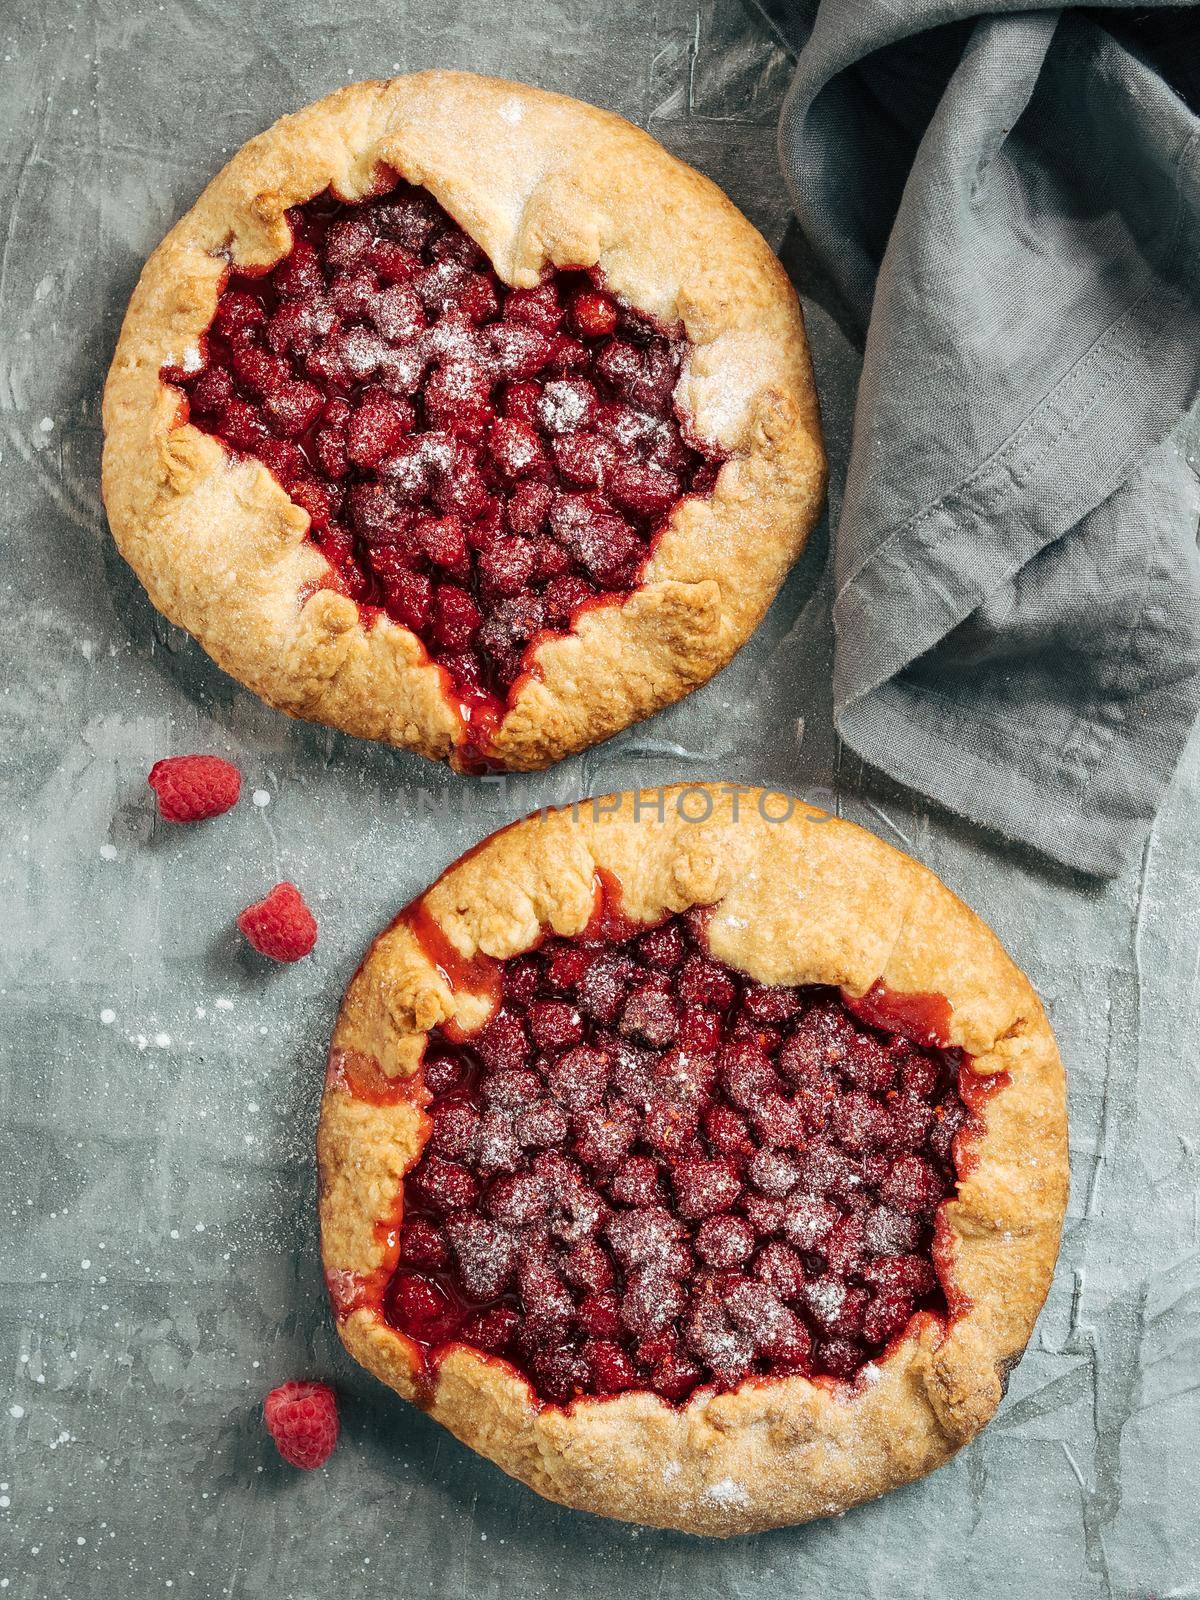 Raspberry galette or raspberries rustic tart by fascinadora